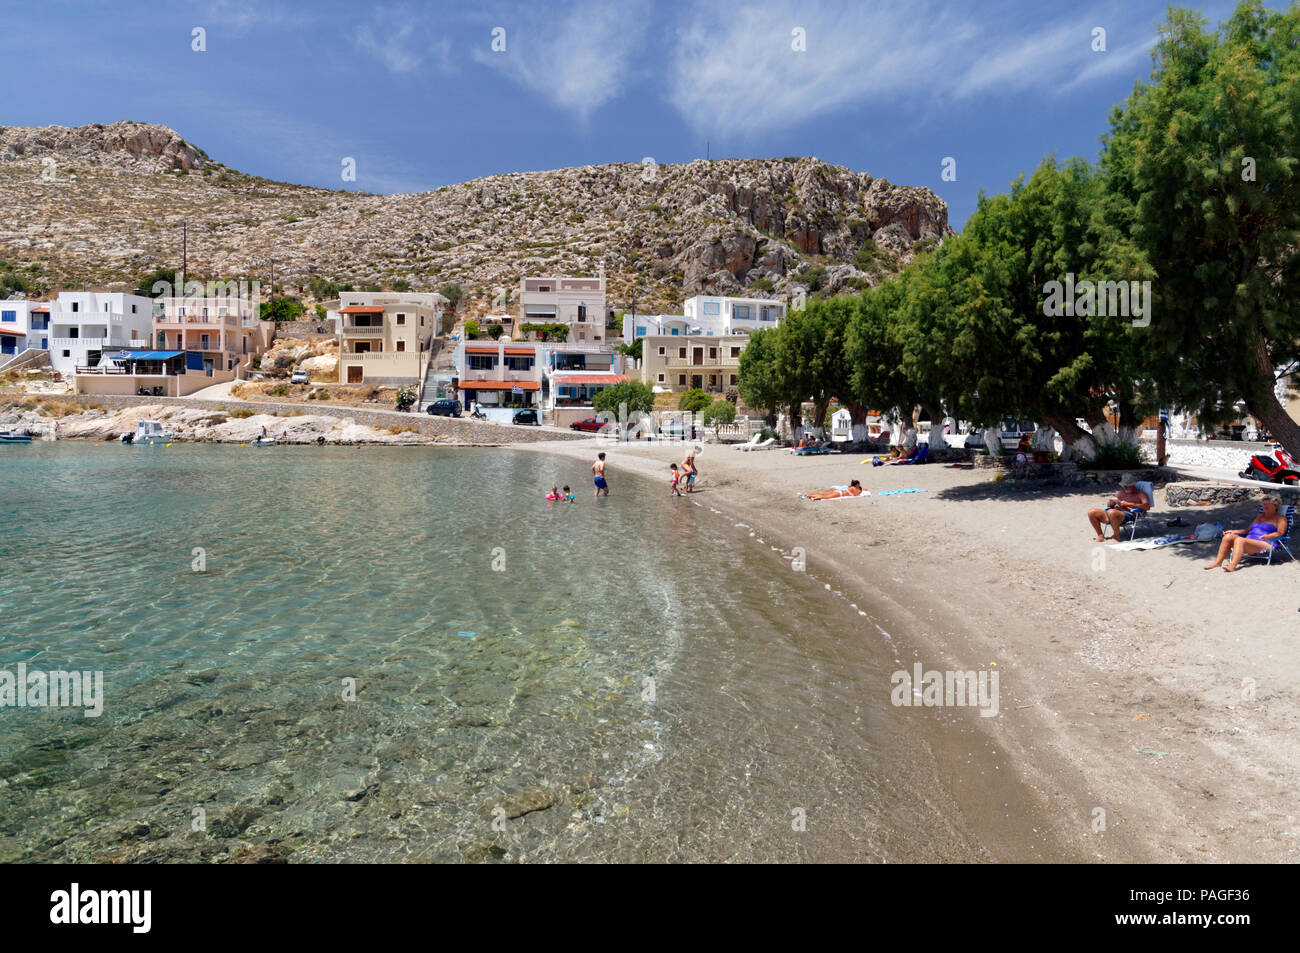 Le village de Vlychadia sur la côte sud de Kalymnos a deux plages c'est la plage de sable, Kalymnos, îles du Dodécanèse, Grèce. Banque D'Images